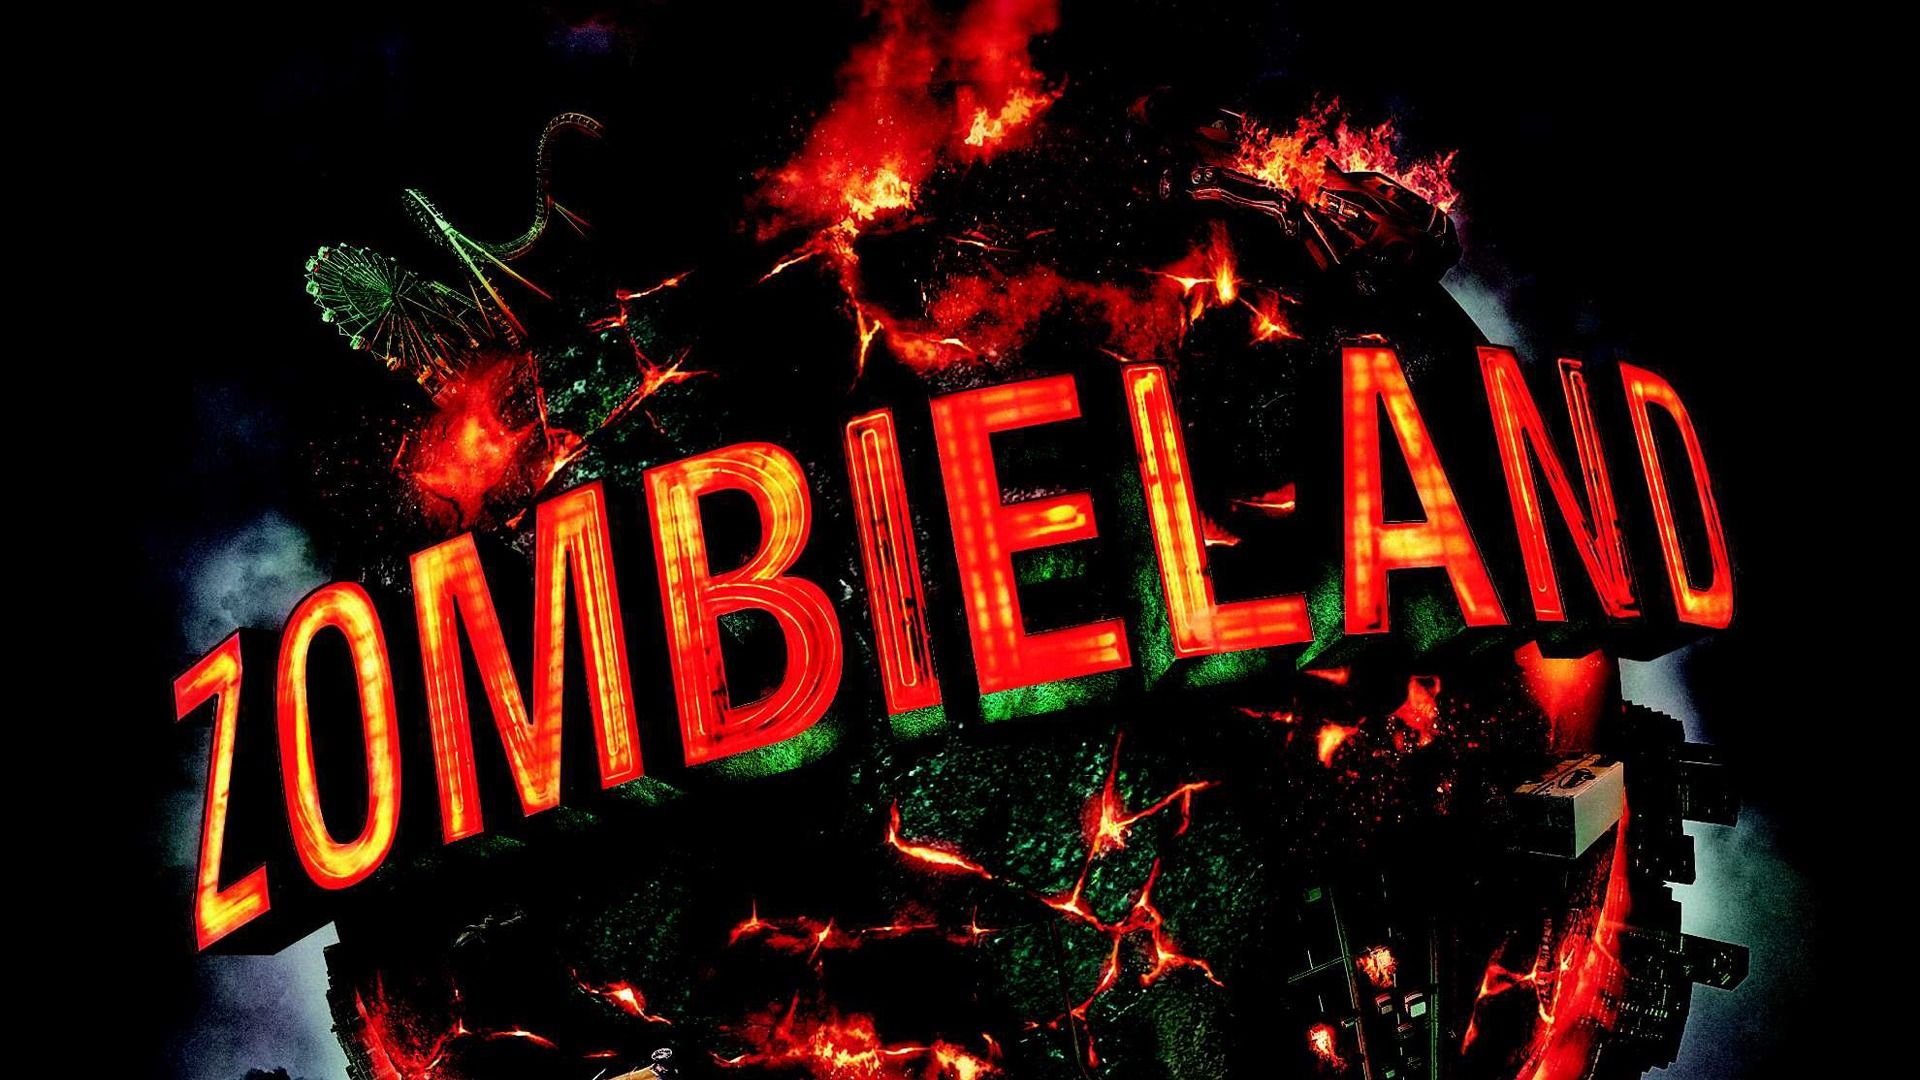 Zombieland HD Wallpaper